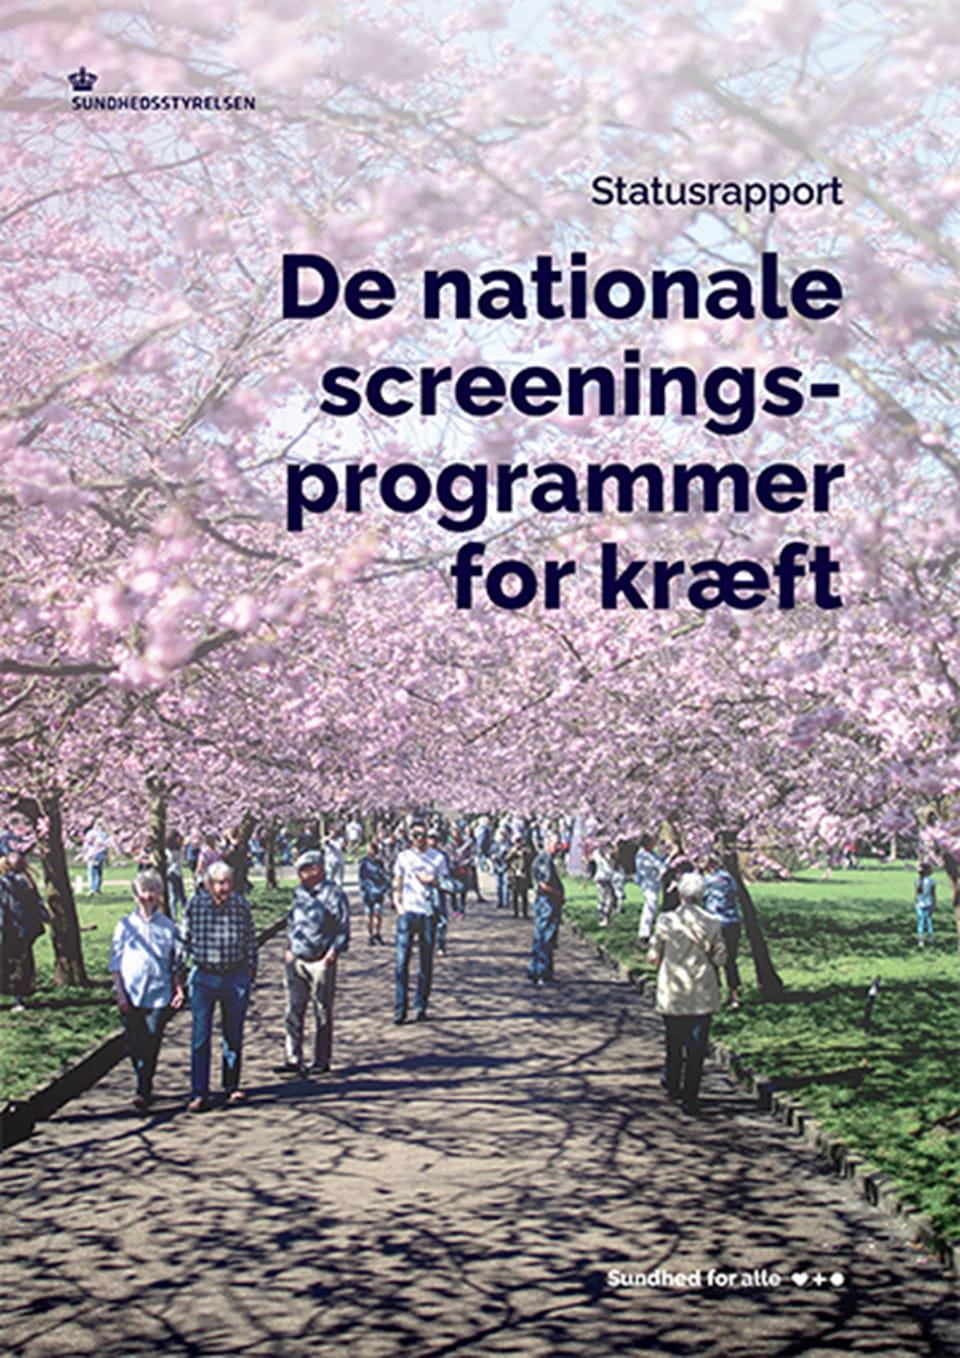 Statusrapport for de nationale screenings­programmer for kræft